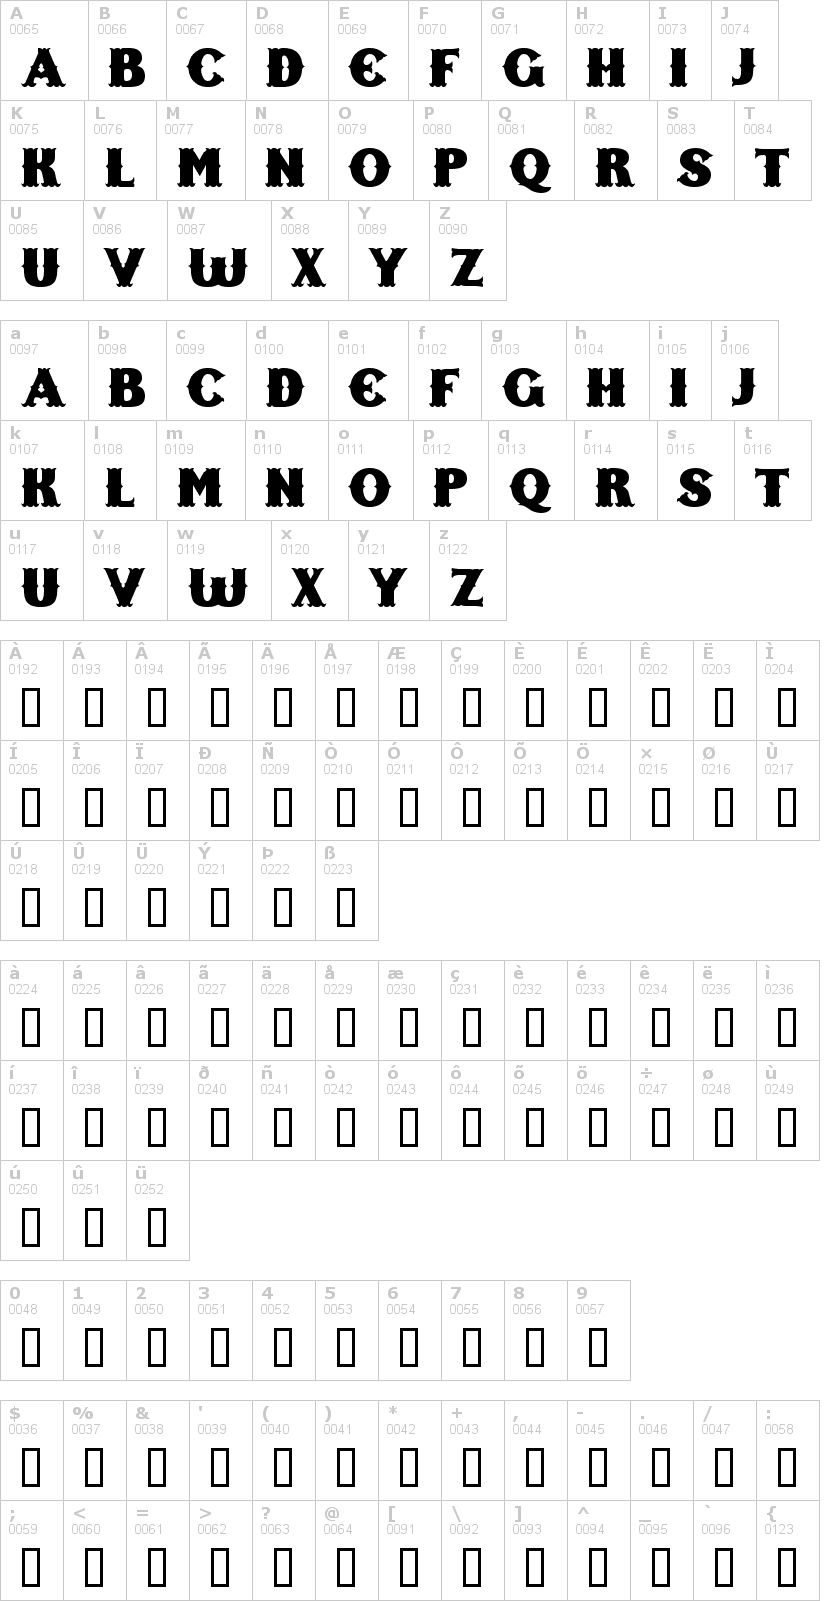 Lettere dell'alfabeto del font freak-show con le quali è possibile realizzare adesivi prespaziati